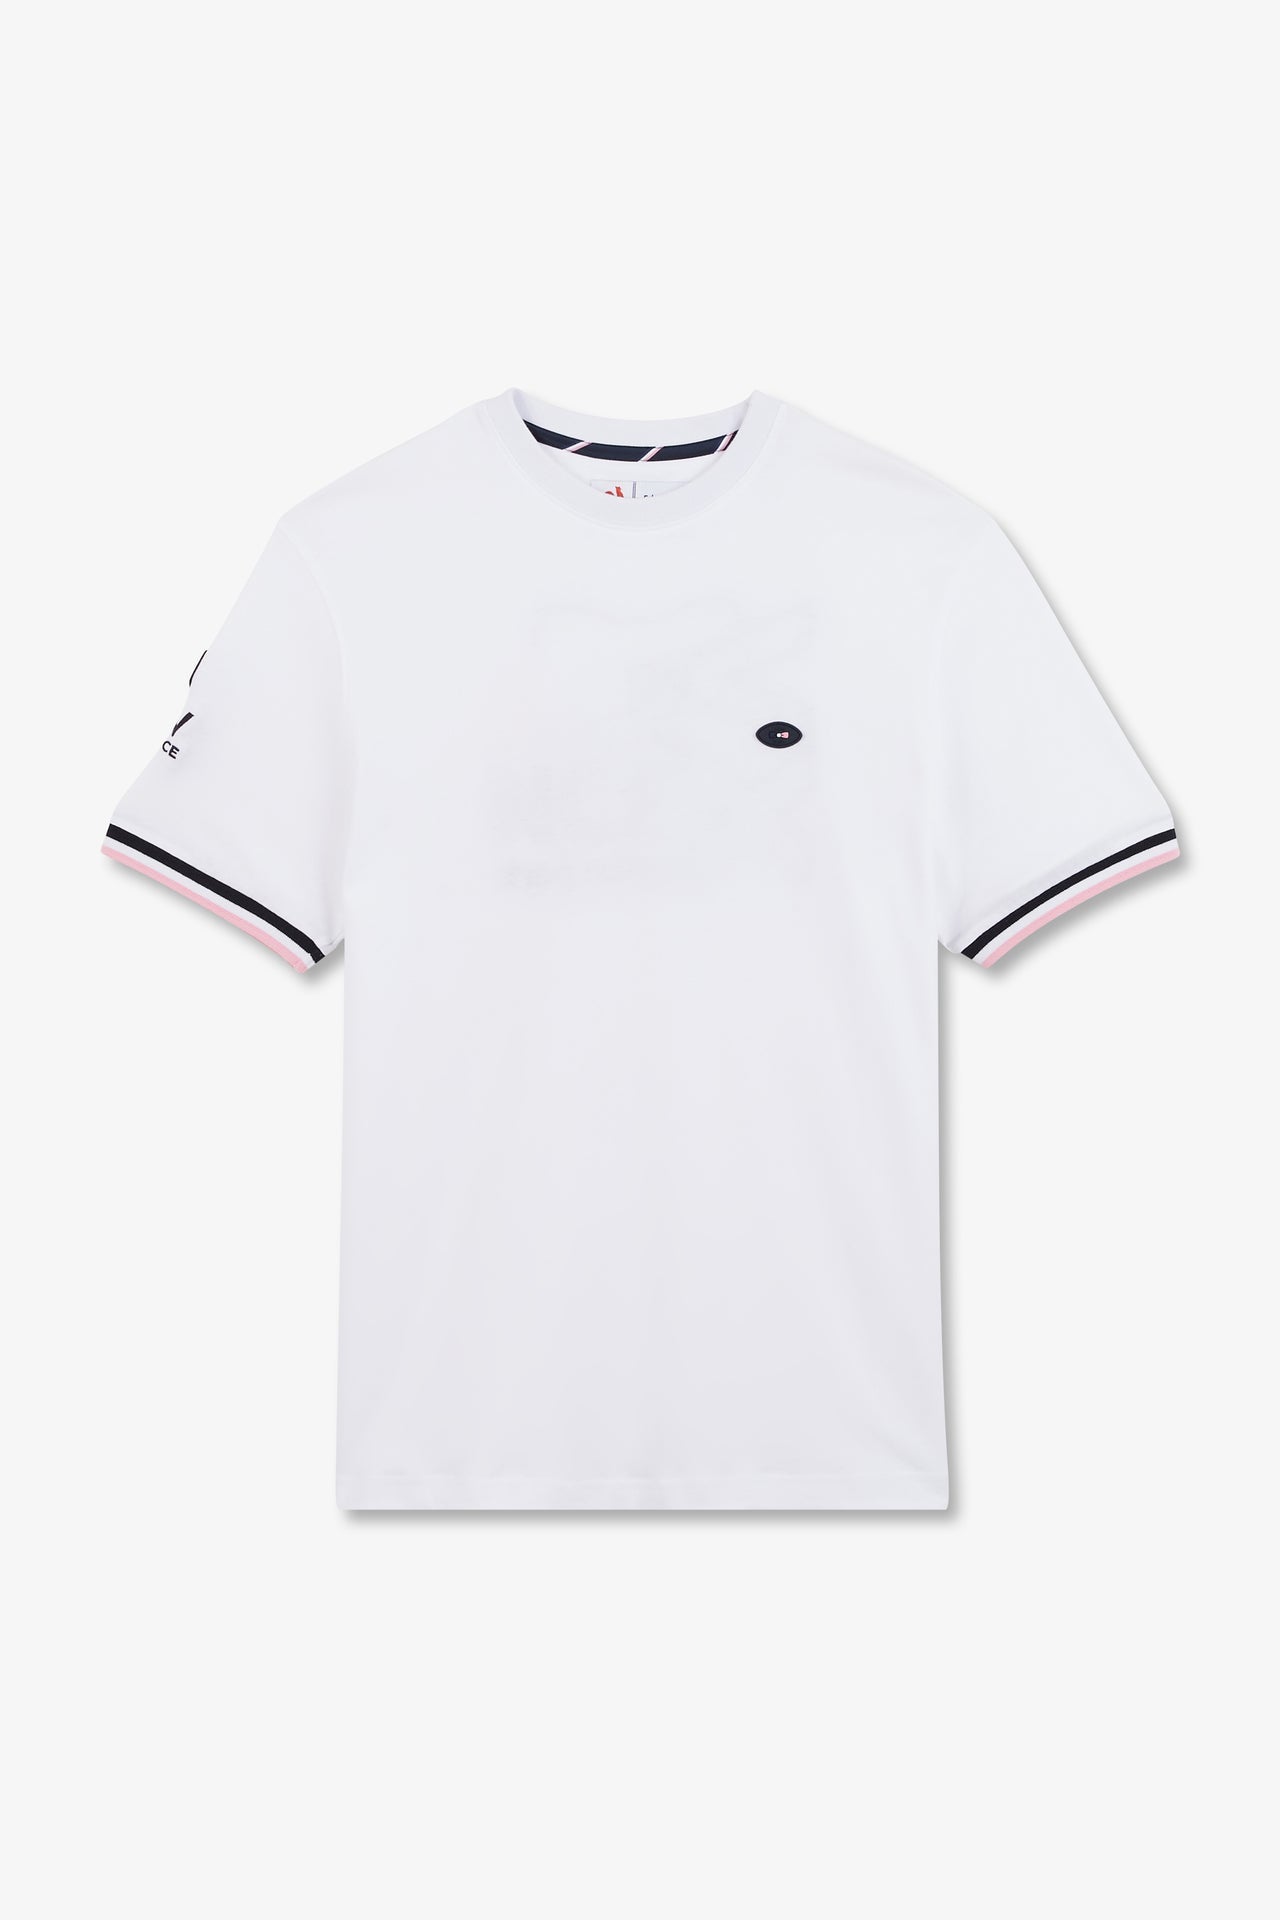 T-shirt blanc à broderie XV de France au dos - Image 2